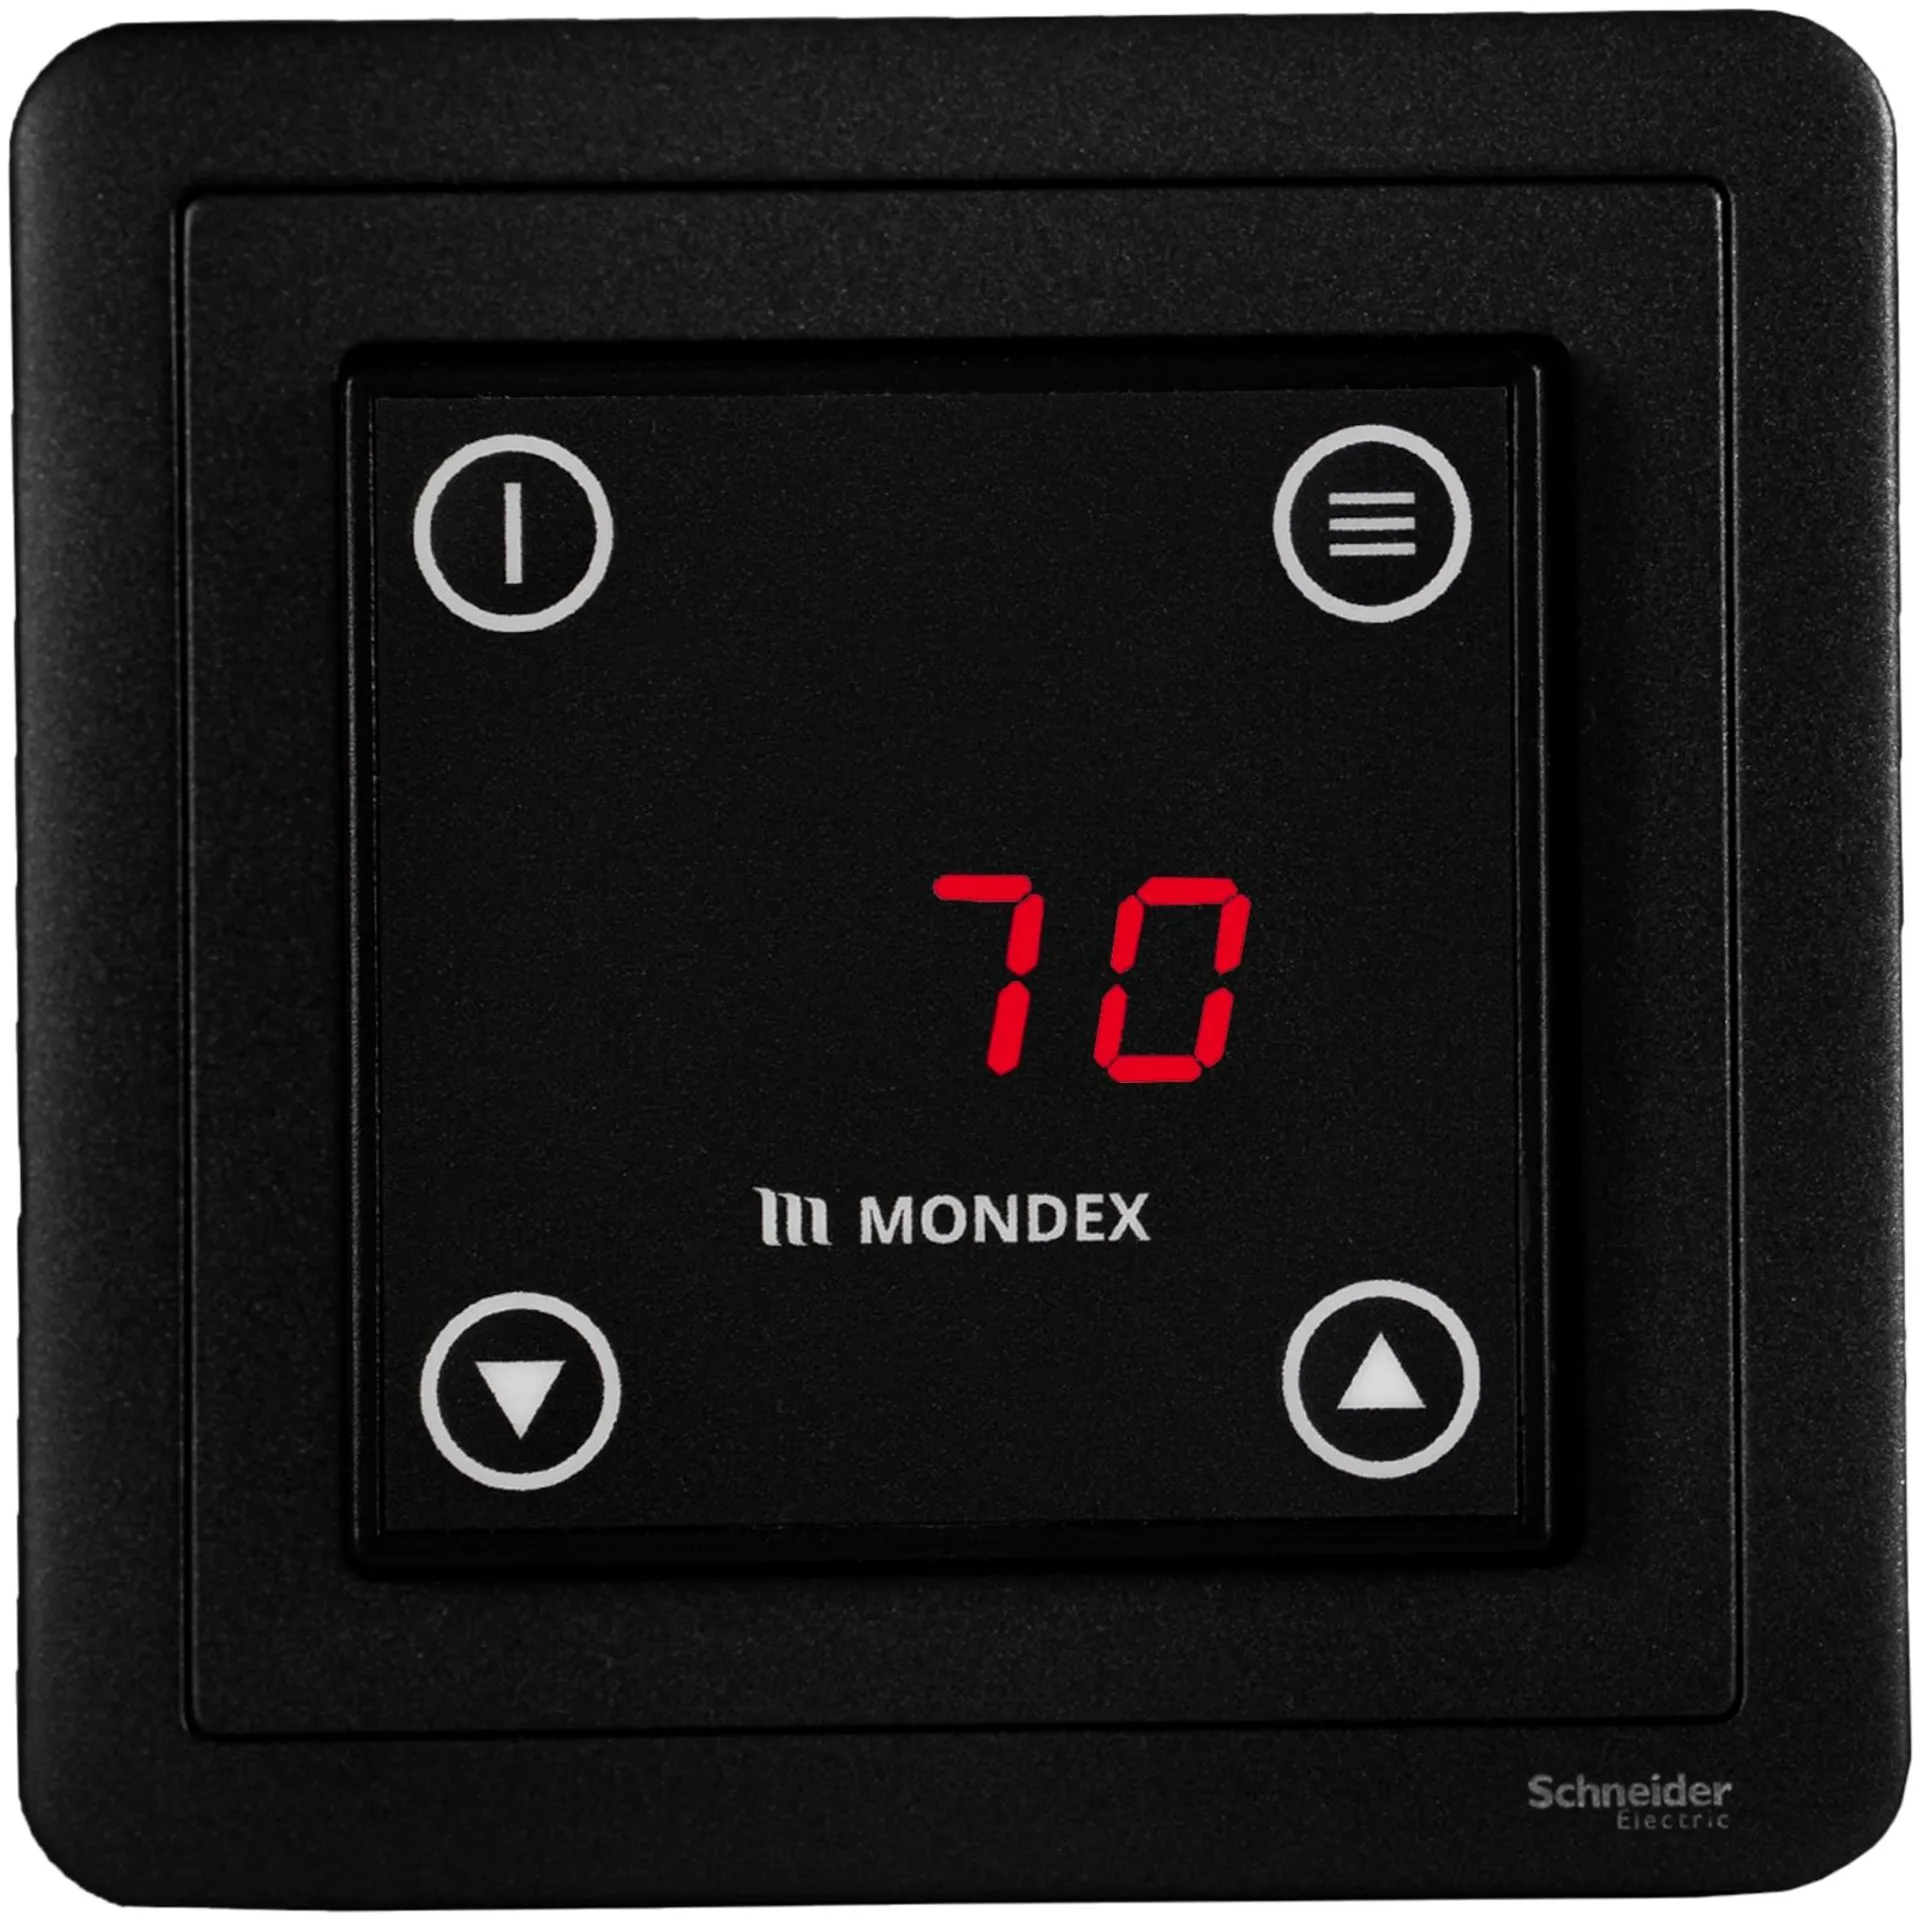 Sähkökiuas Mondex Louhi E2 6.6 KW - 2